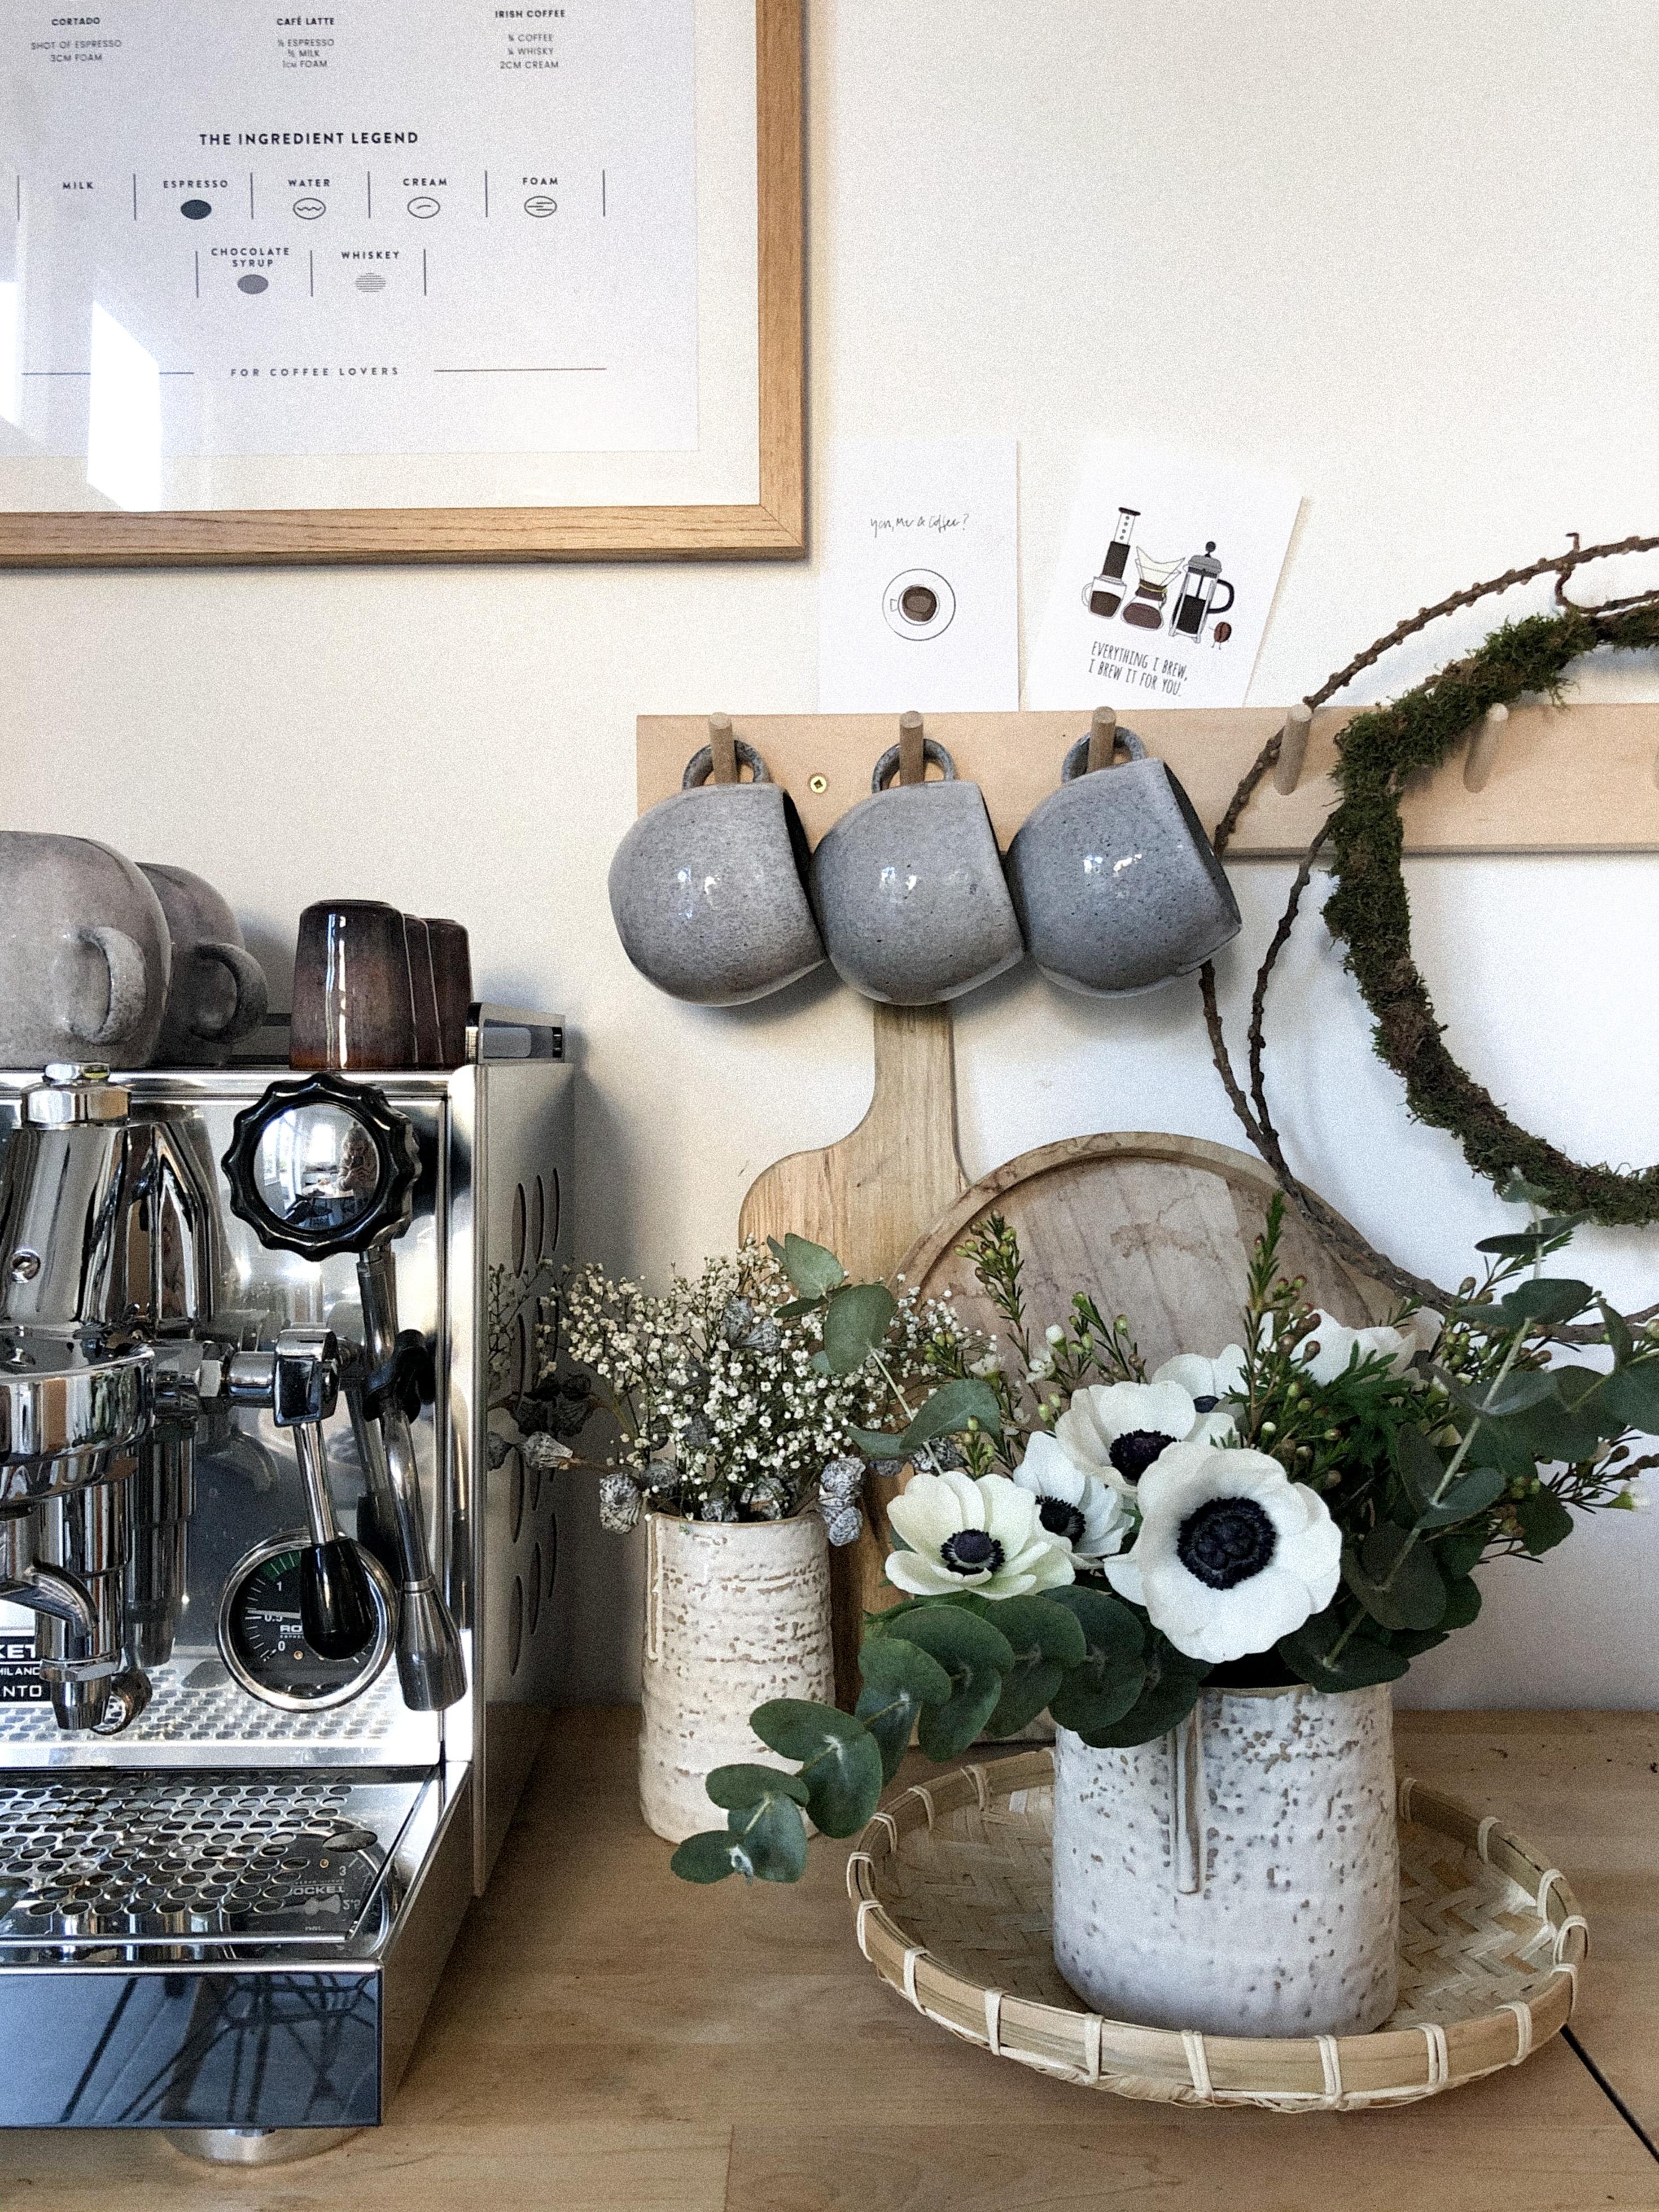 #freshflowerfriday in der Küche in der Lieblingsecke! #kaffee #blumen #küche #coffee #kaffeeecke